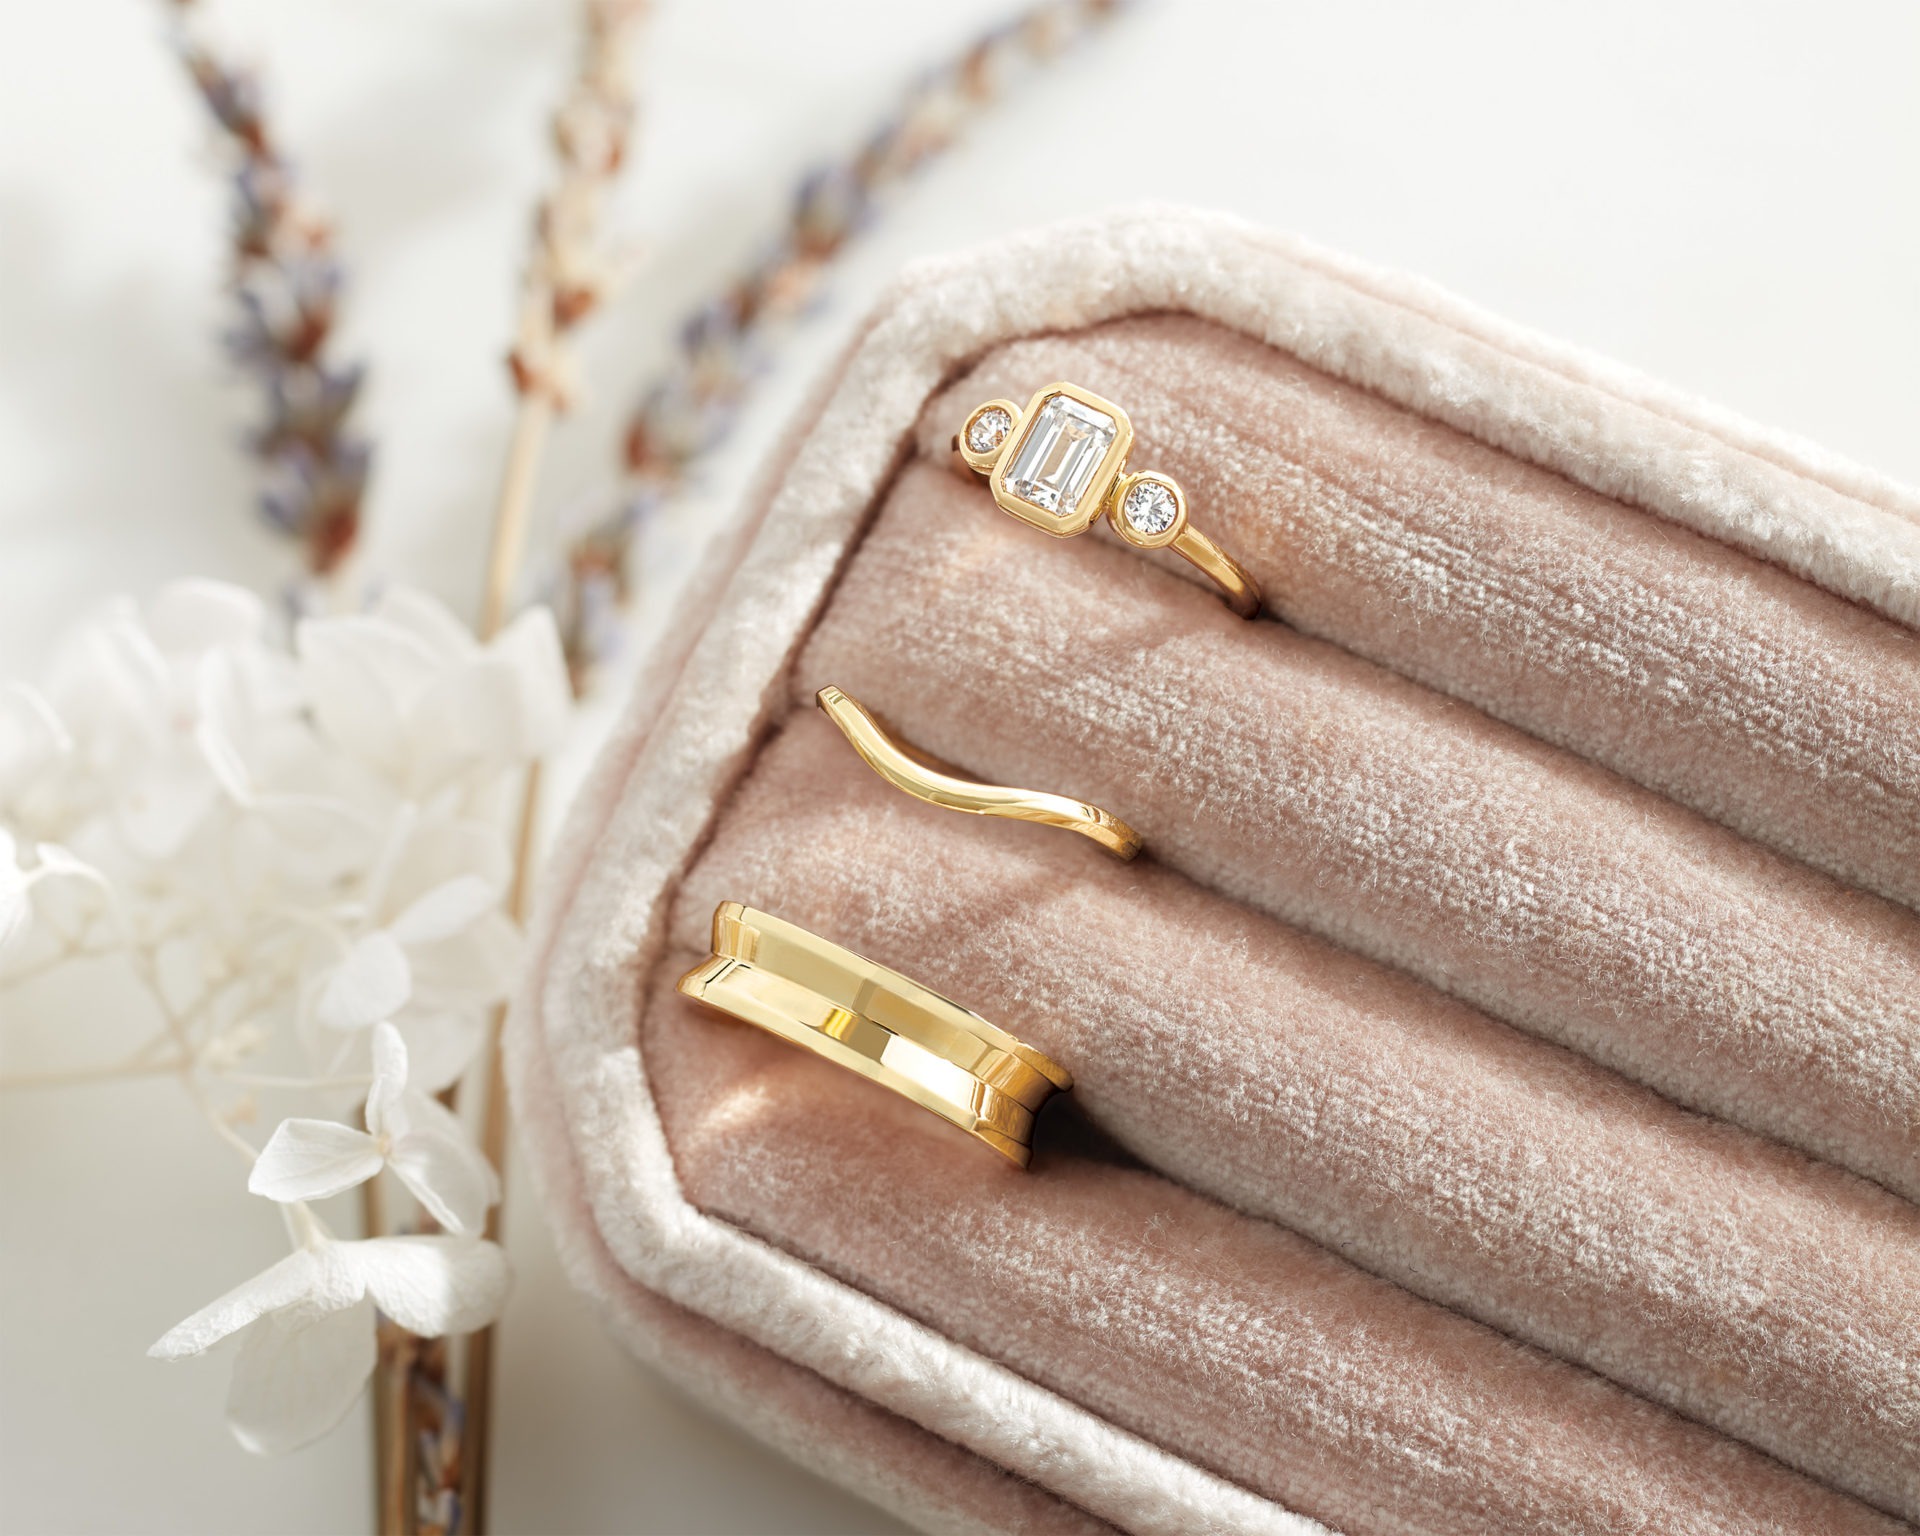 bezel-set engagement ring wedding band set